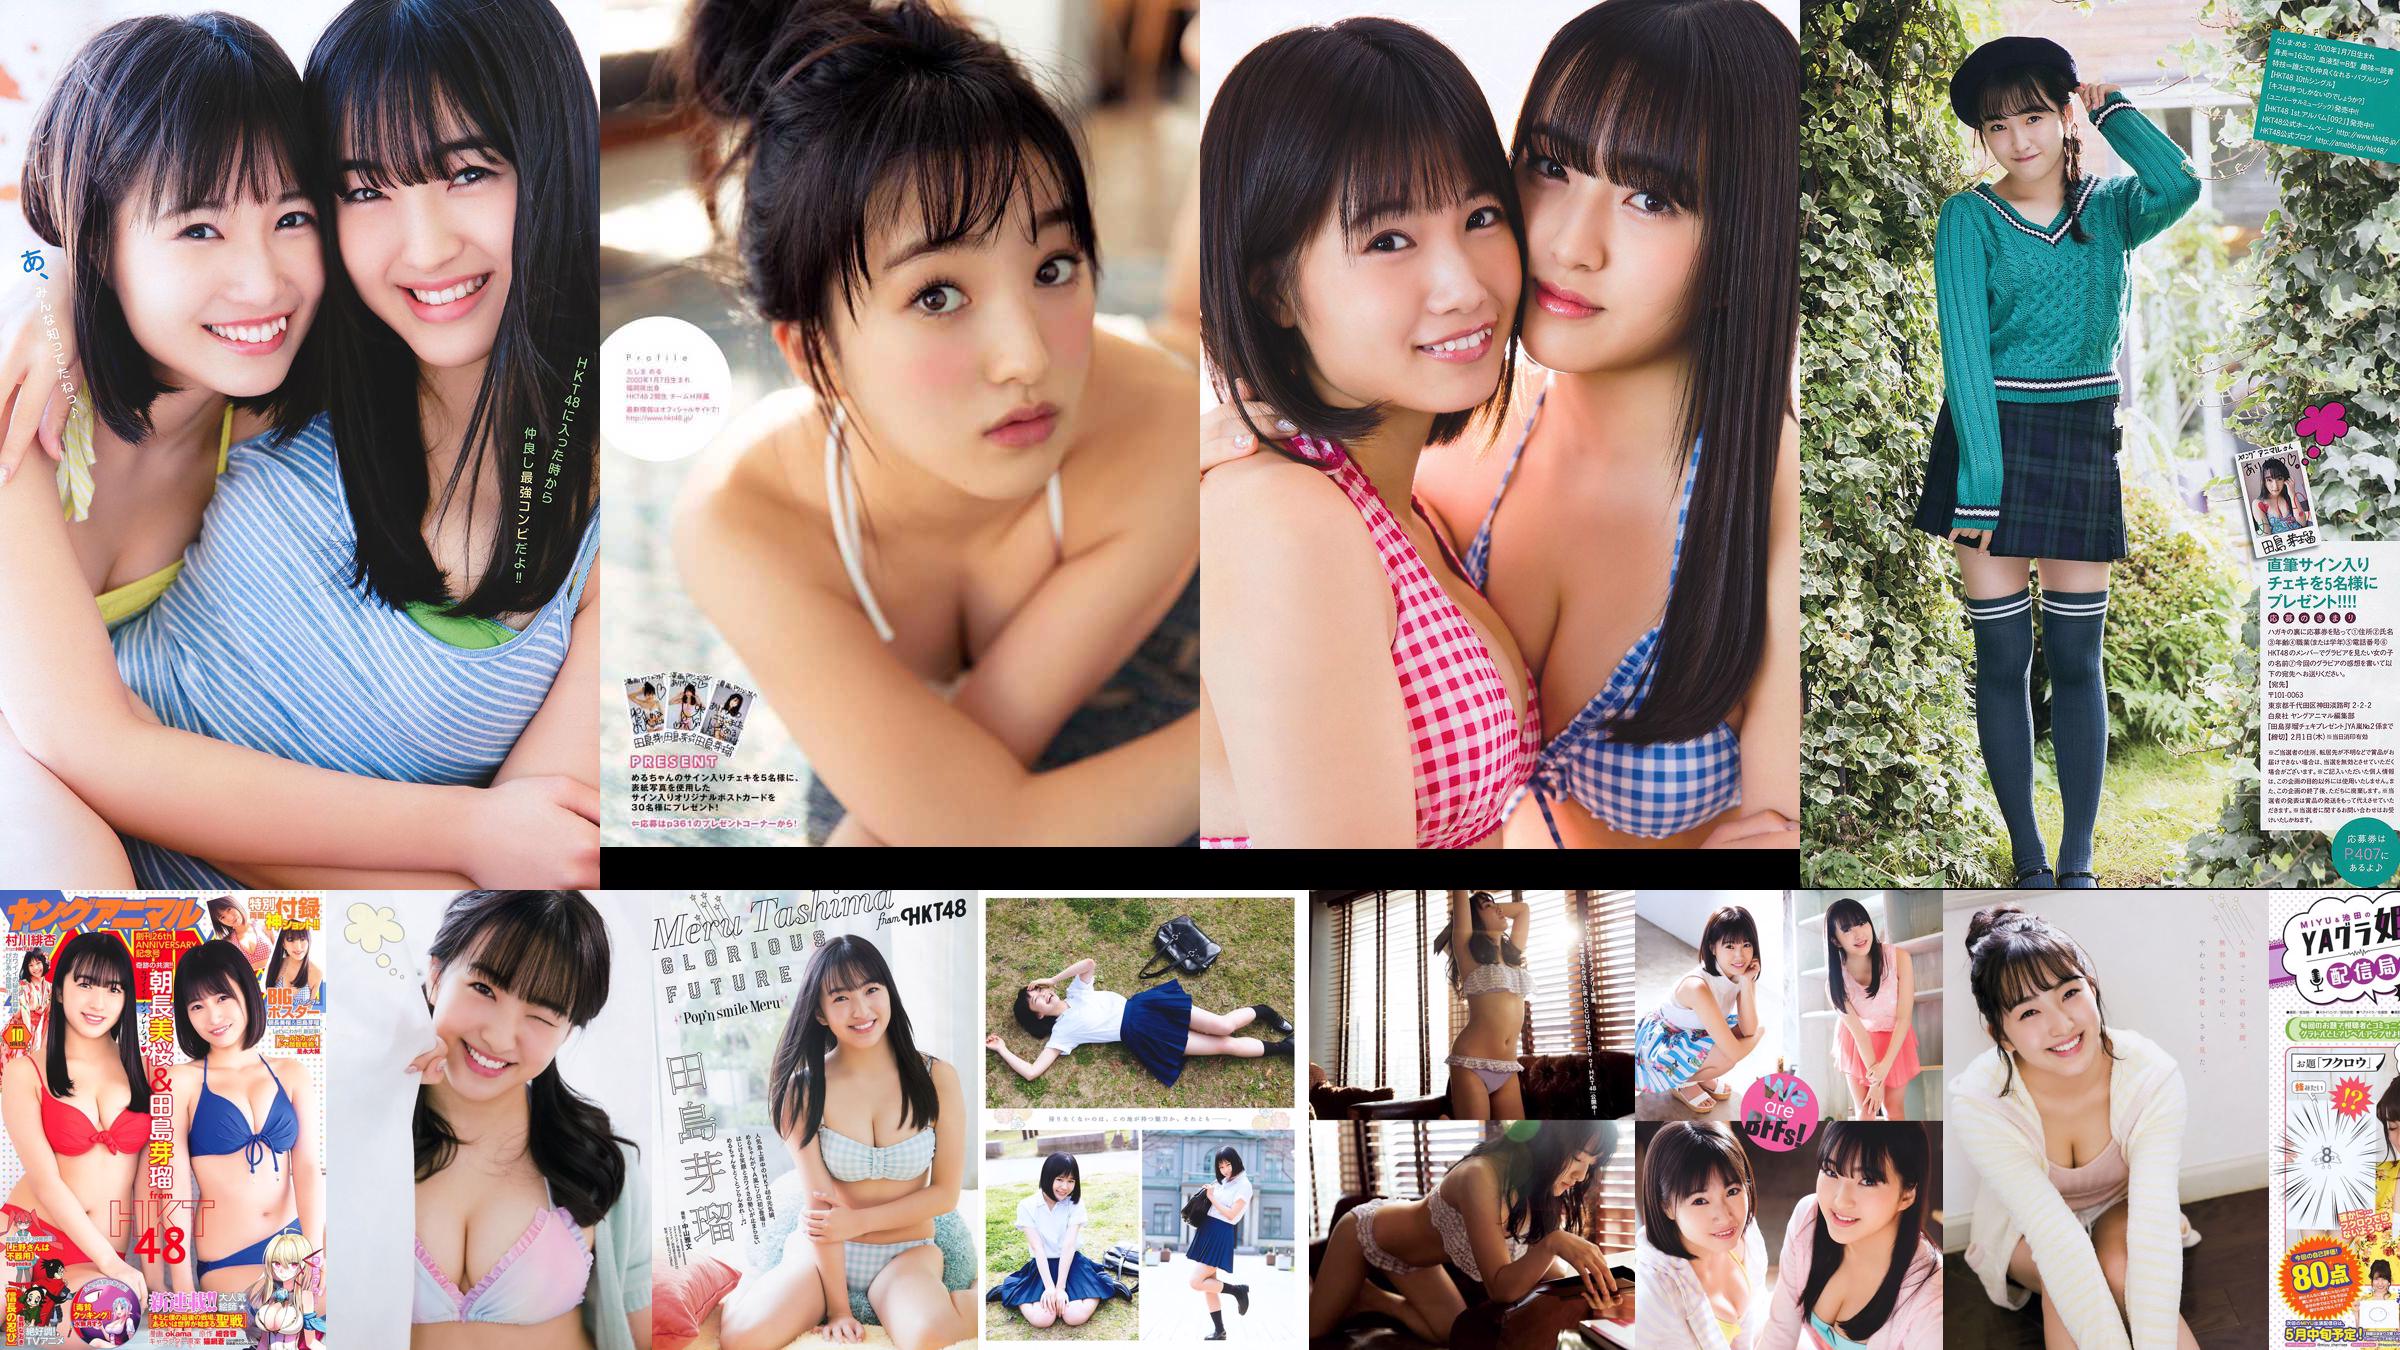 Nana Ayano Yuka Someya [Young Animal Arashi Special Edition] No.06 2015 Foto No.6d8755 Seite 1